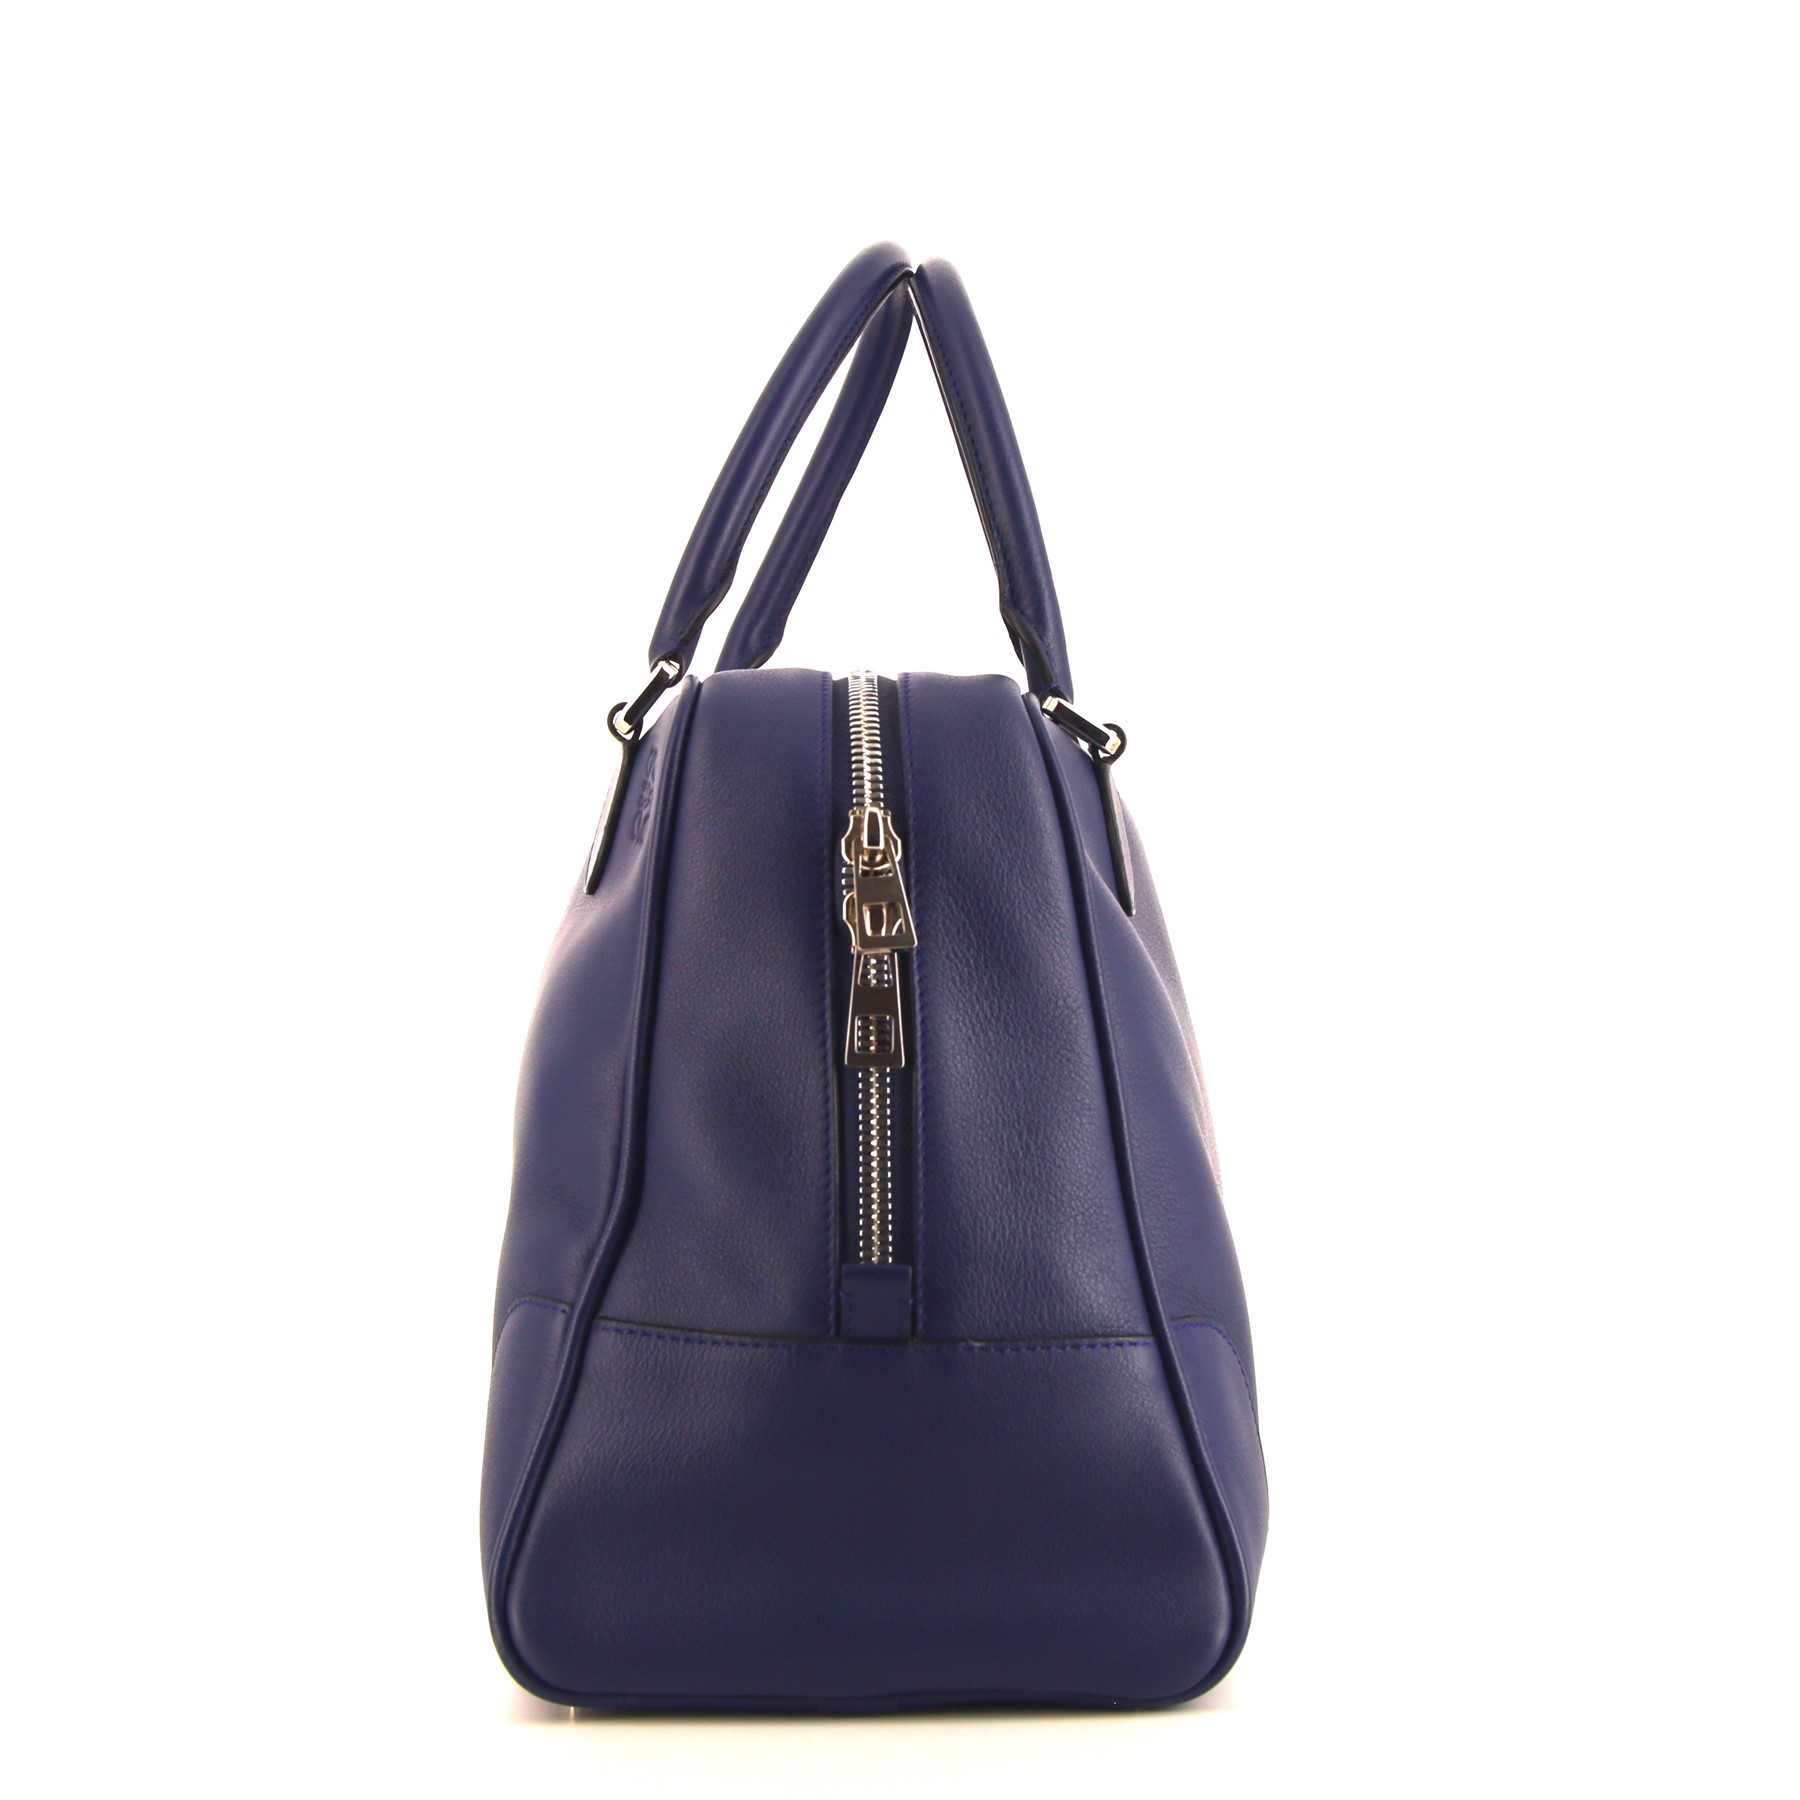 Amazona Large Handbag In Navy Blue Leather